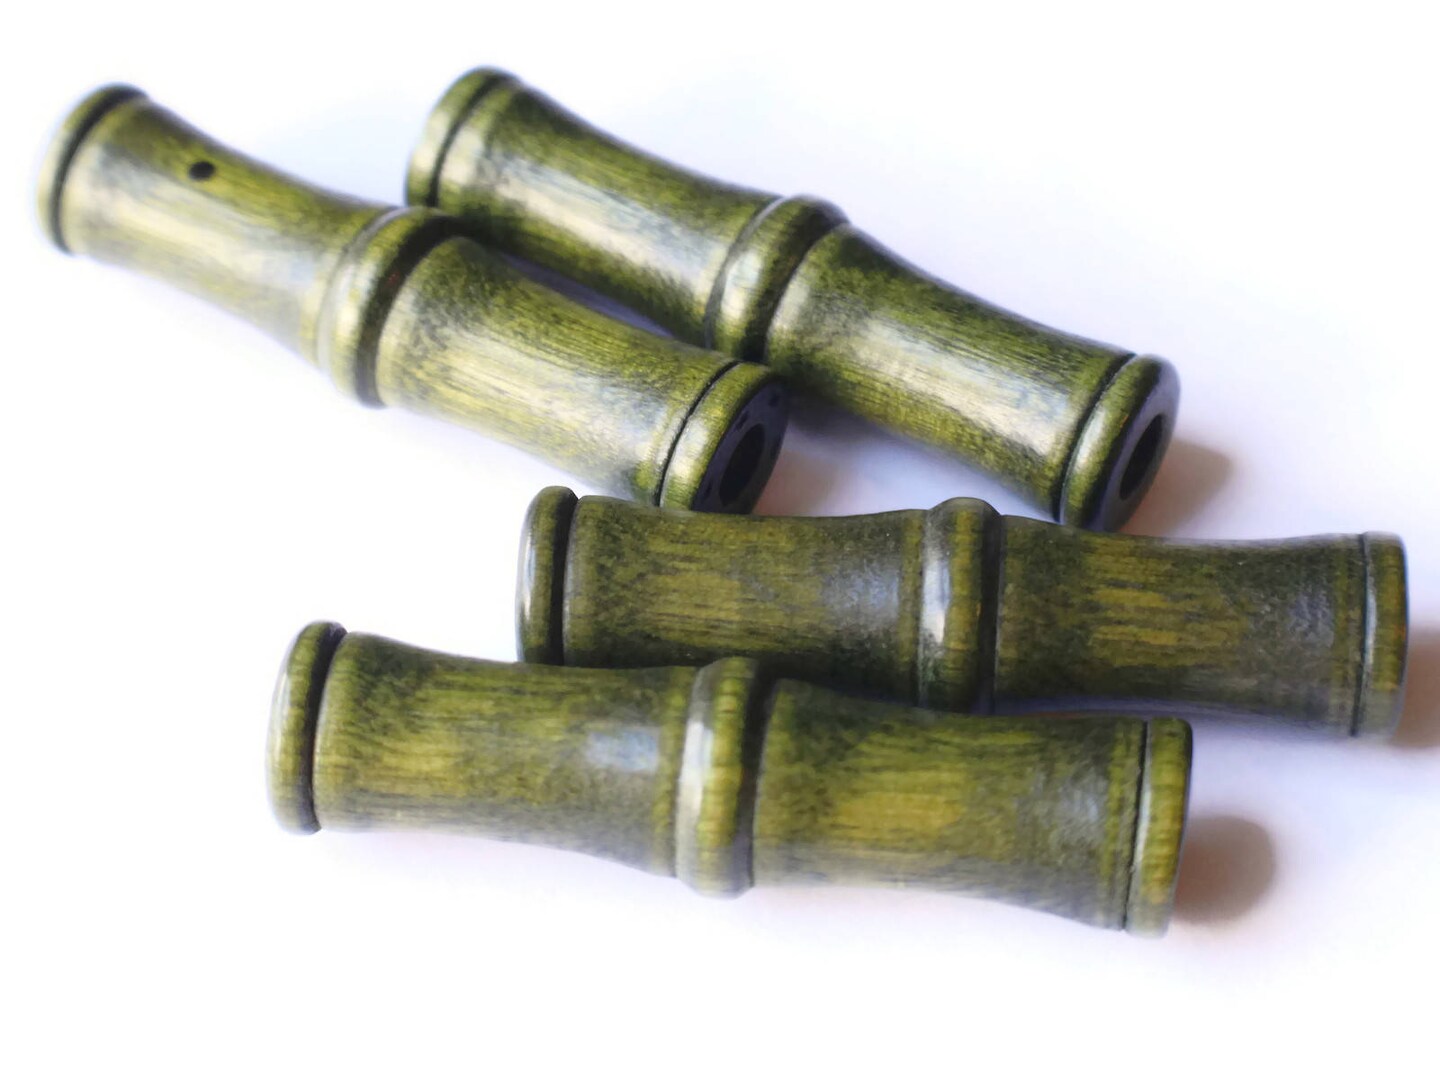 4 61mm Vintage Green Wood Tube Beads - Large Hole Macrame Beads